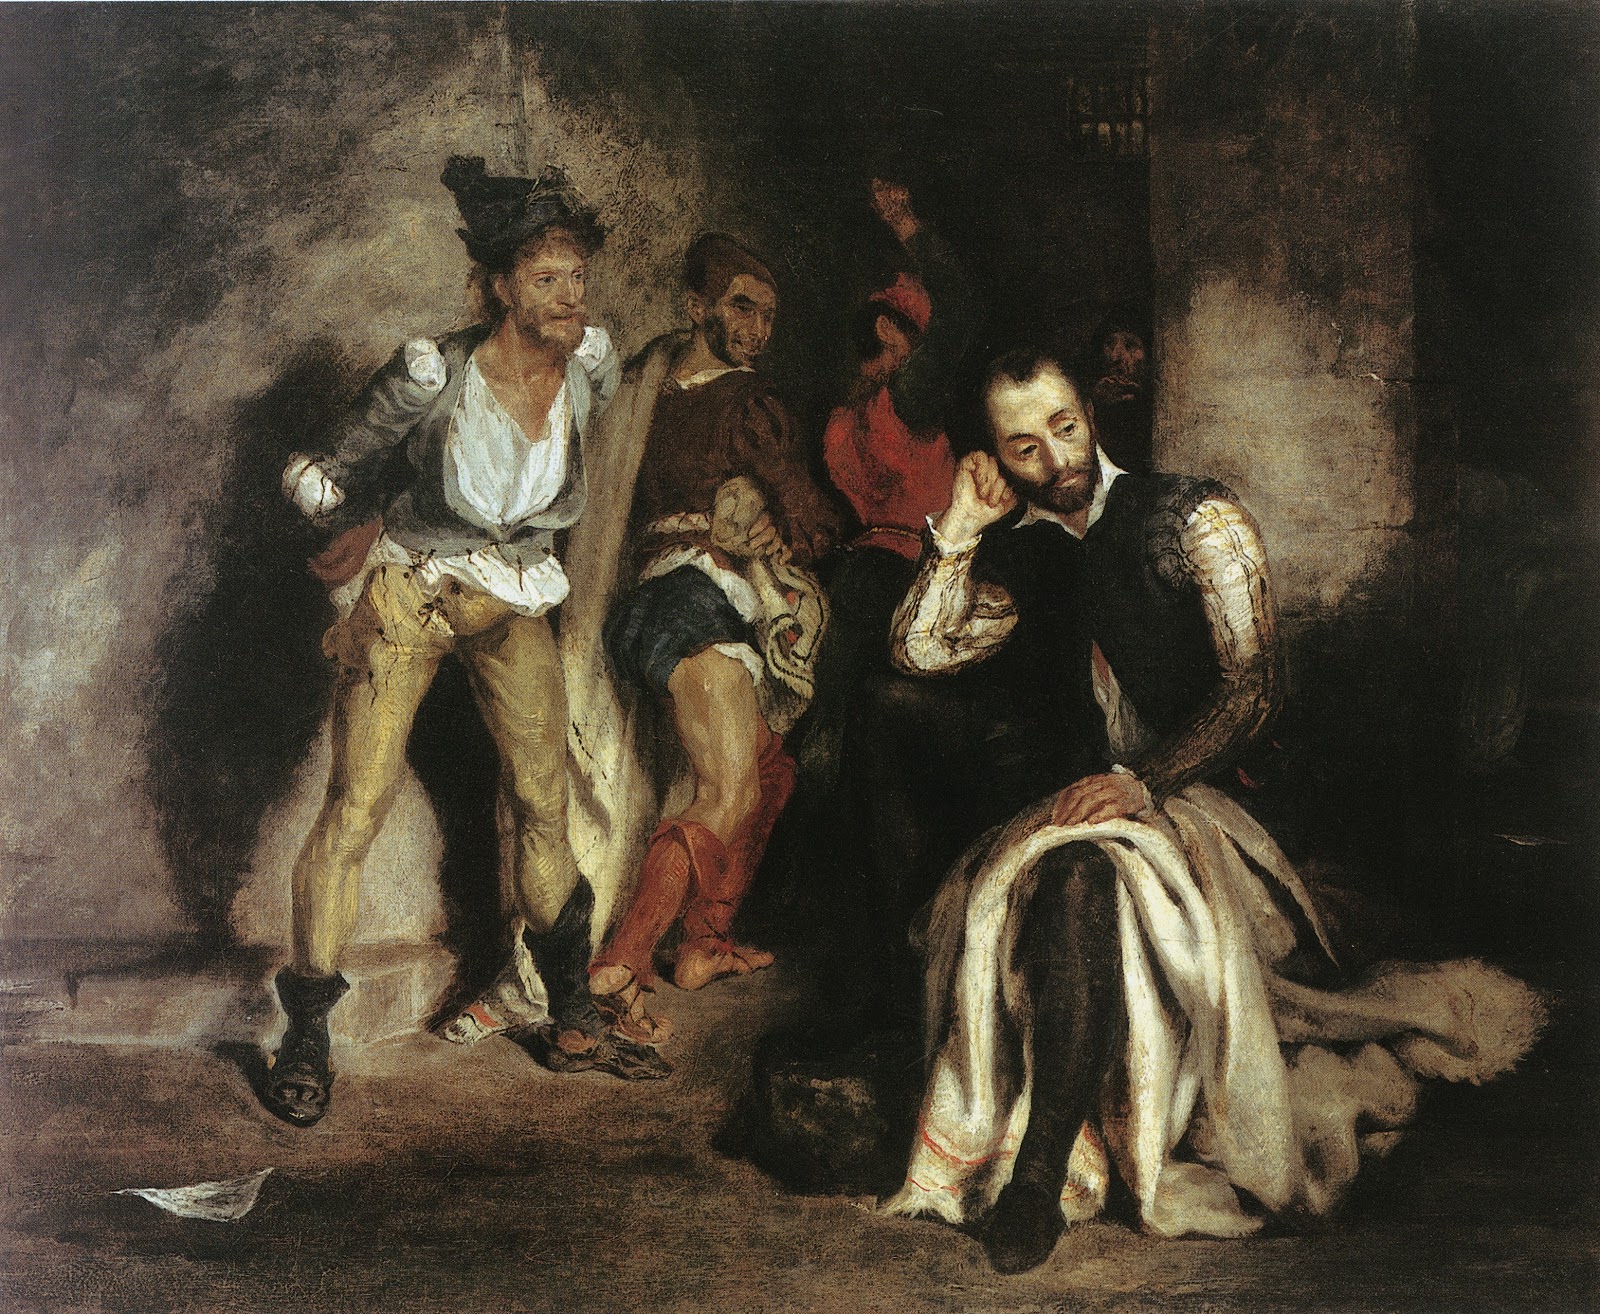 Eugene+Delacroix-1798-1863 (206).jpg